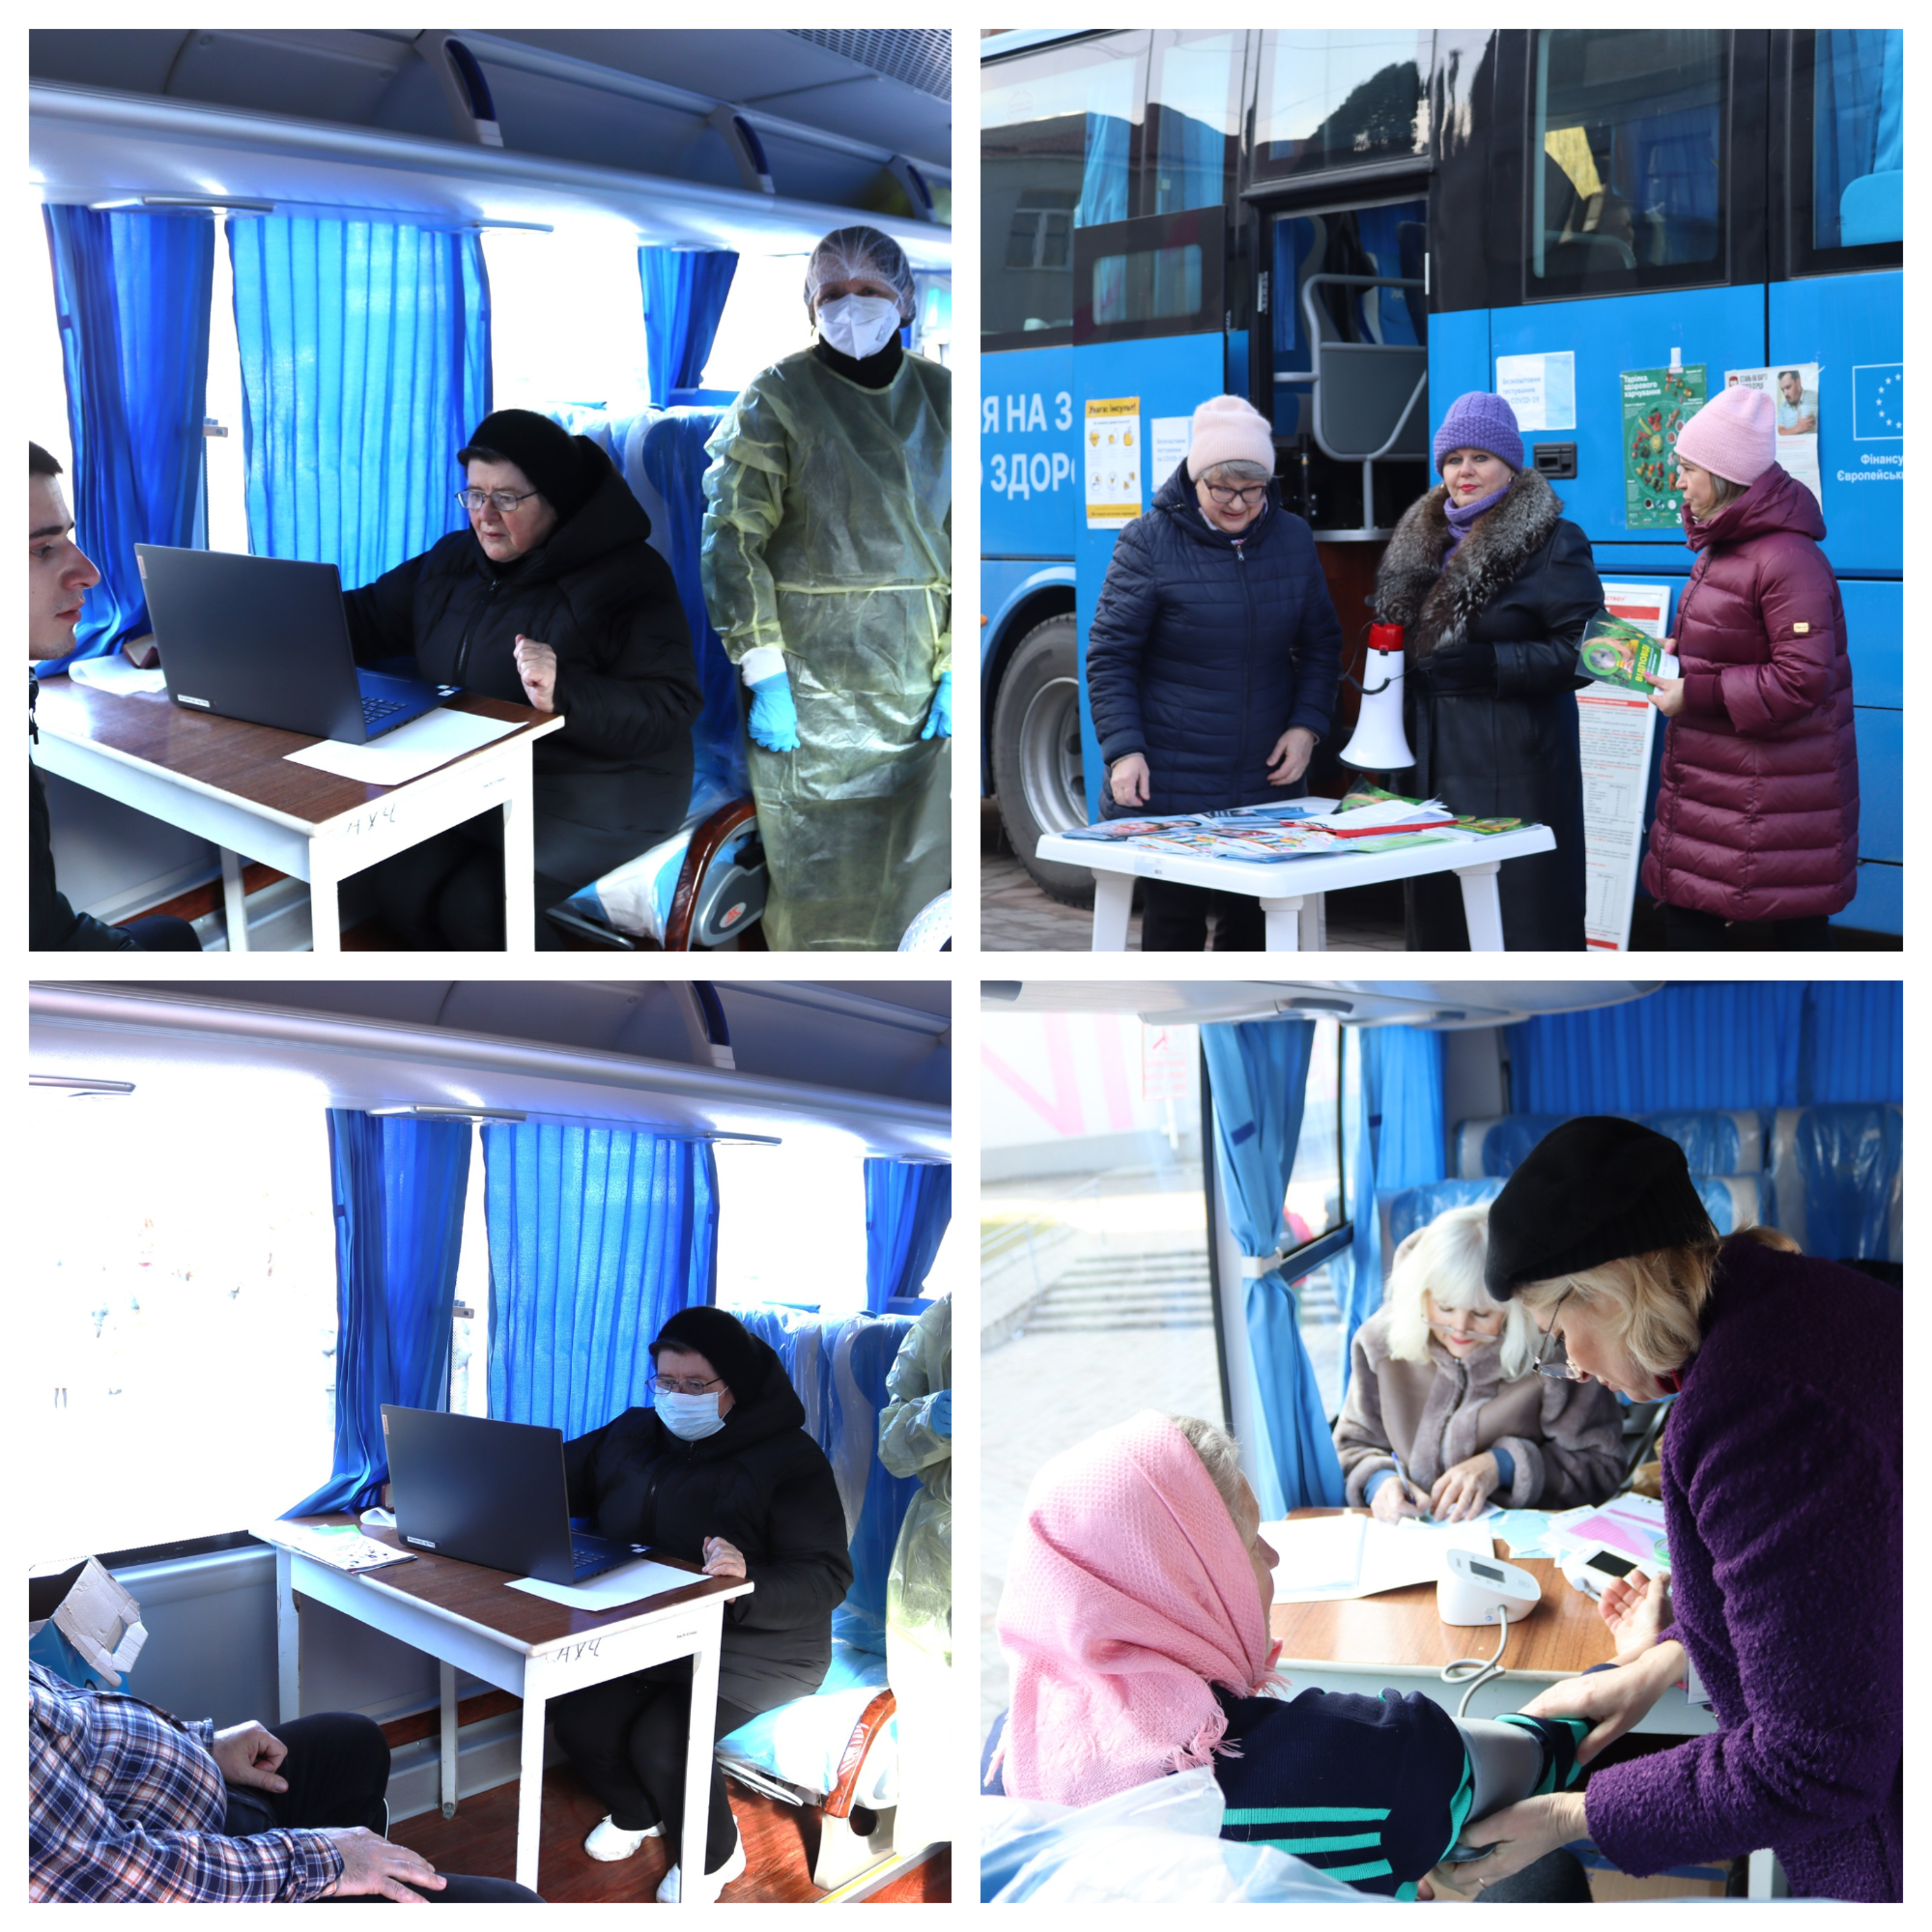 У Жмеринку приїздив “вакцинобус” - жителі отримали безкоштовне тестування та консультації